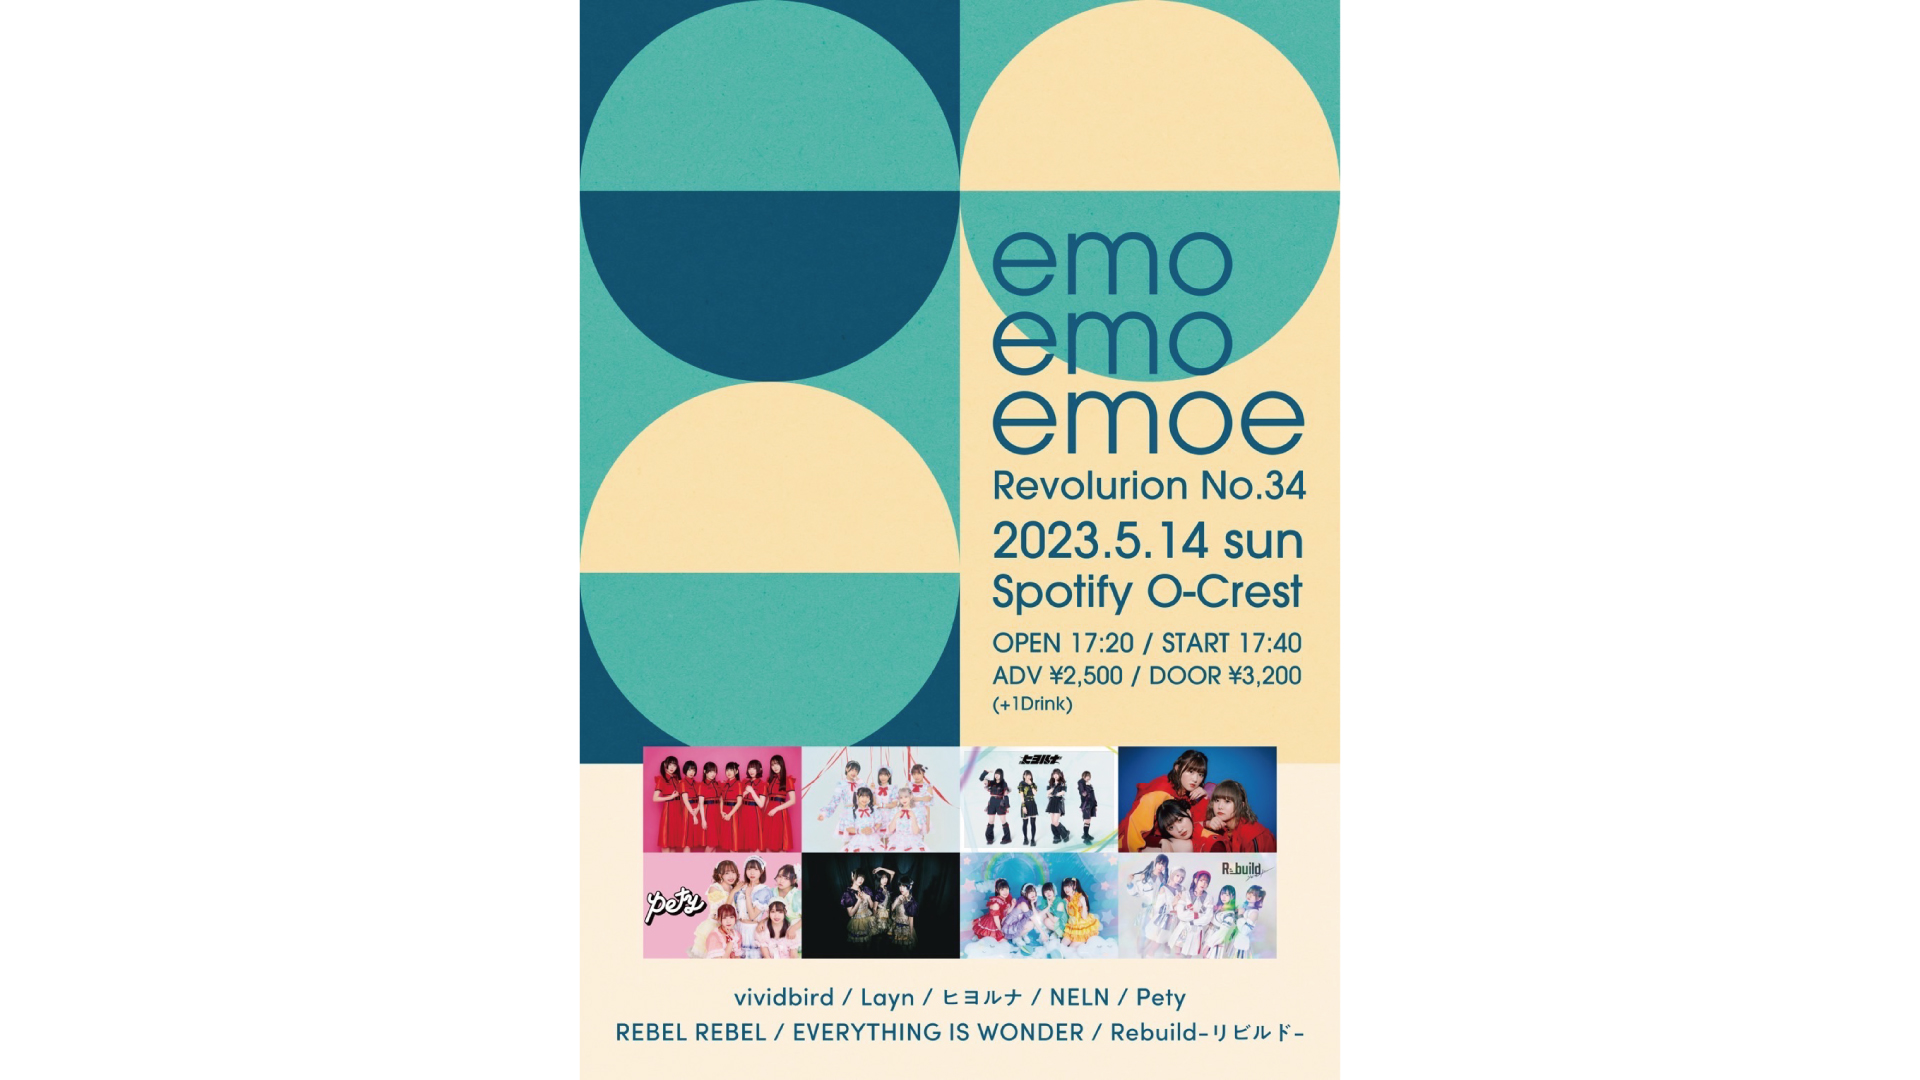 emoemoemoe_Revolution No. 34_23/5/14